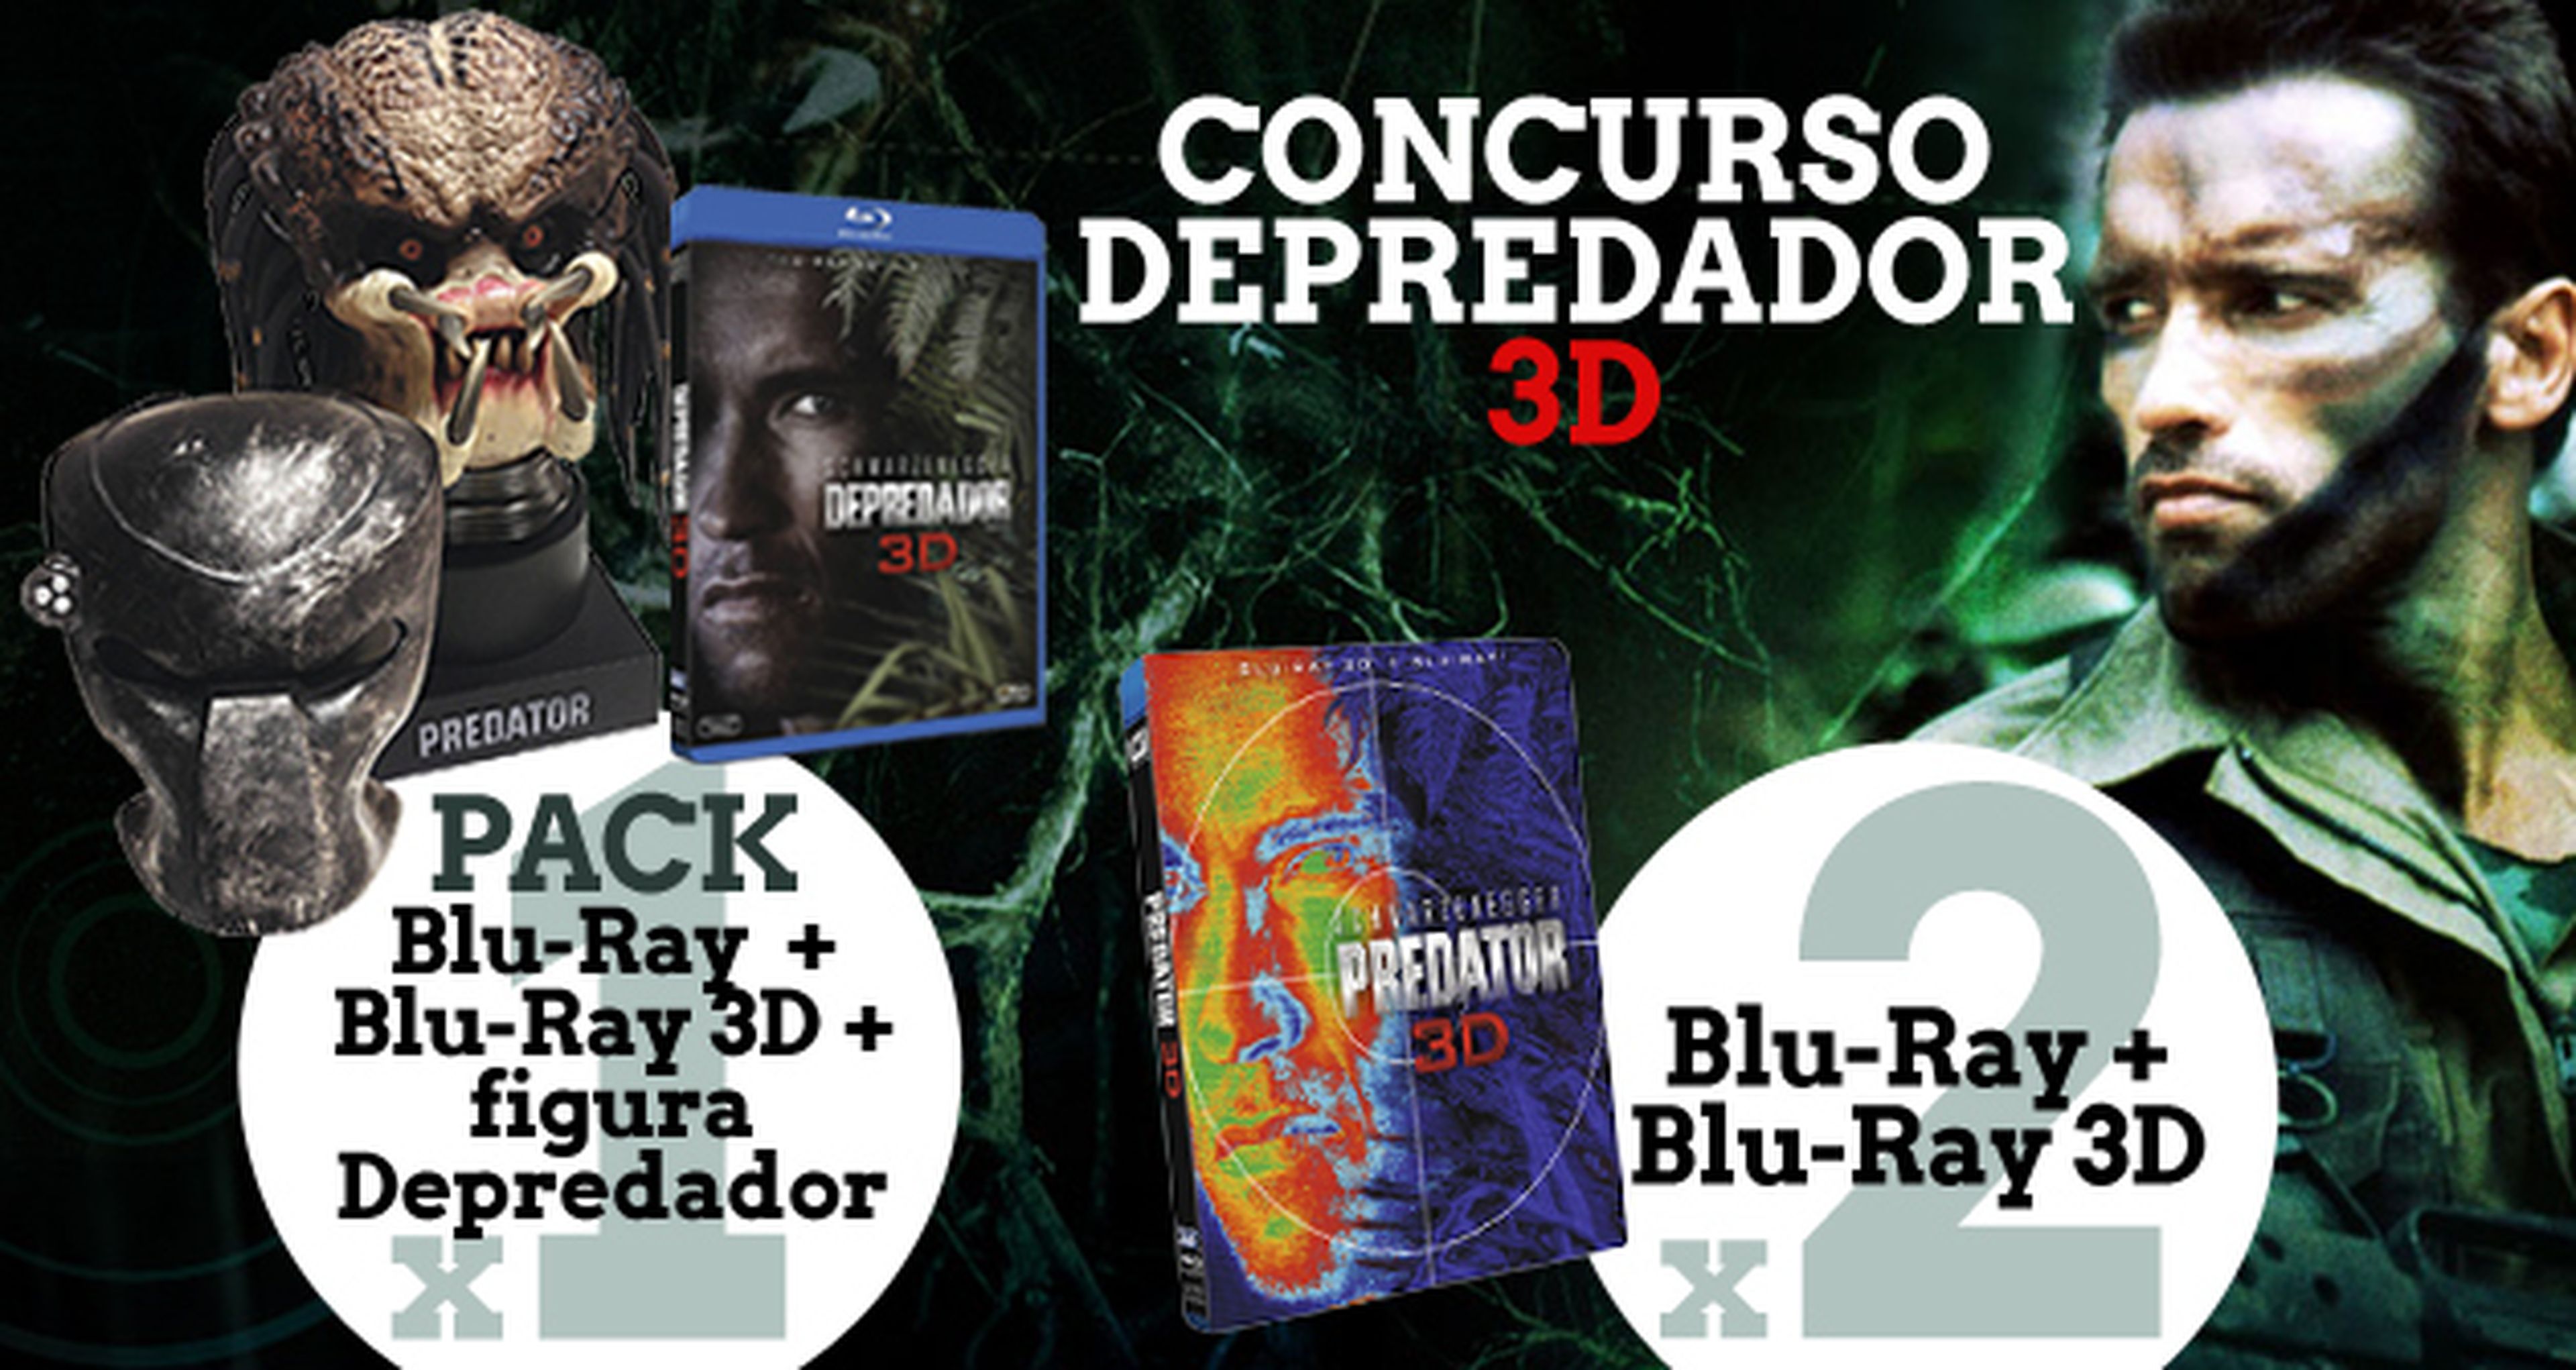 Concurso Depredador 3D: ¡Regalamos una edición especial!